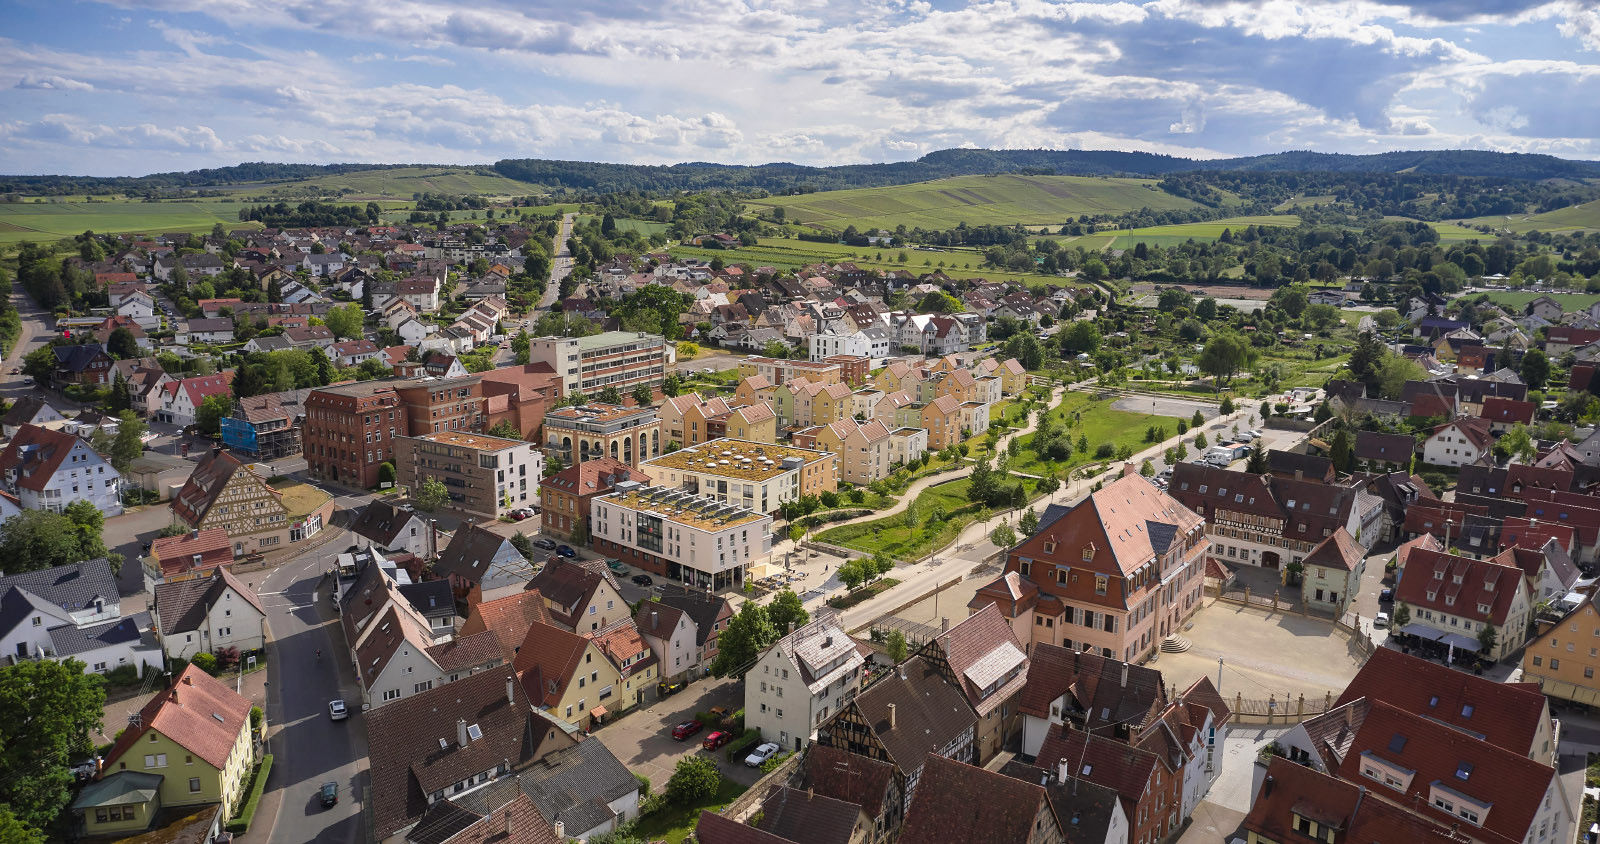 Luftbildaufnahme einer Kleinstadt nähe Stuttgart